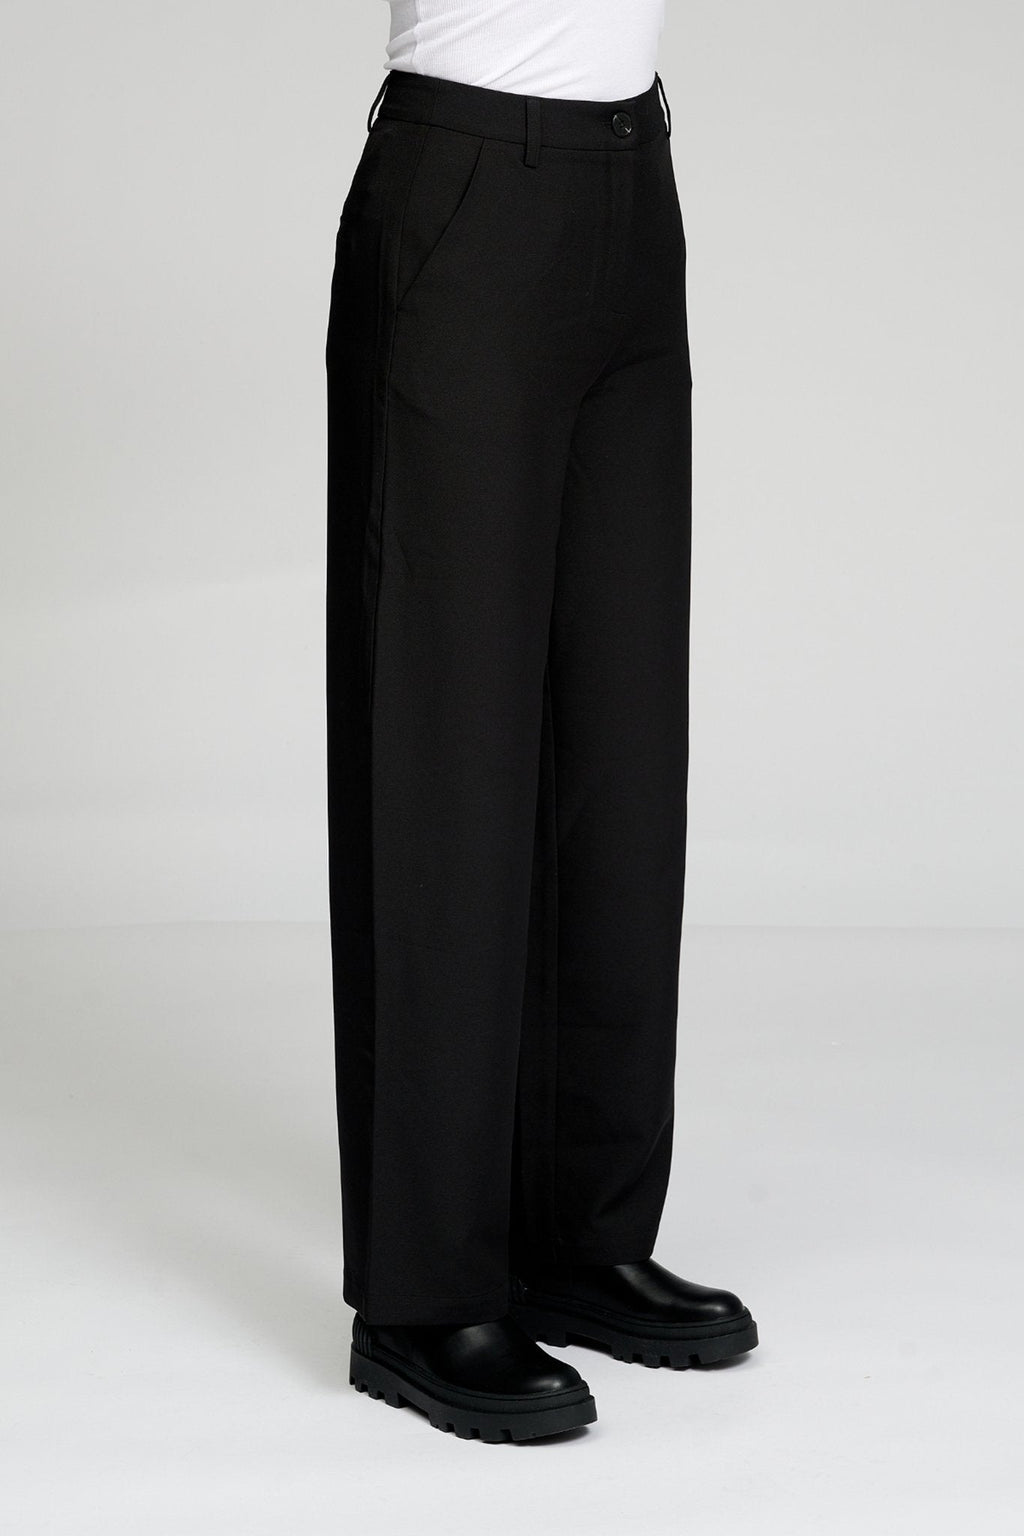 Klasične hlače za odijelo - crno